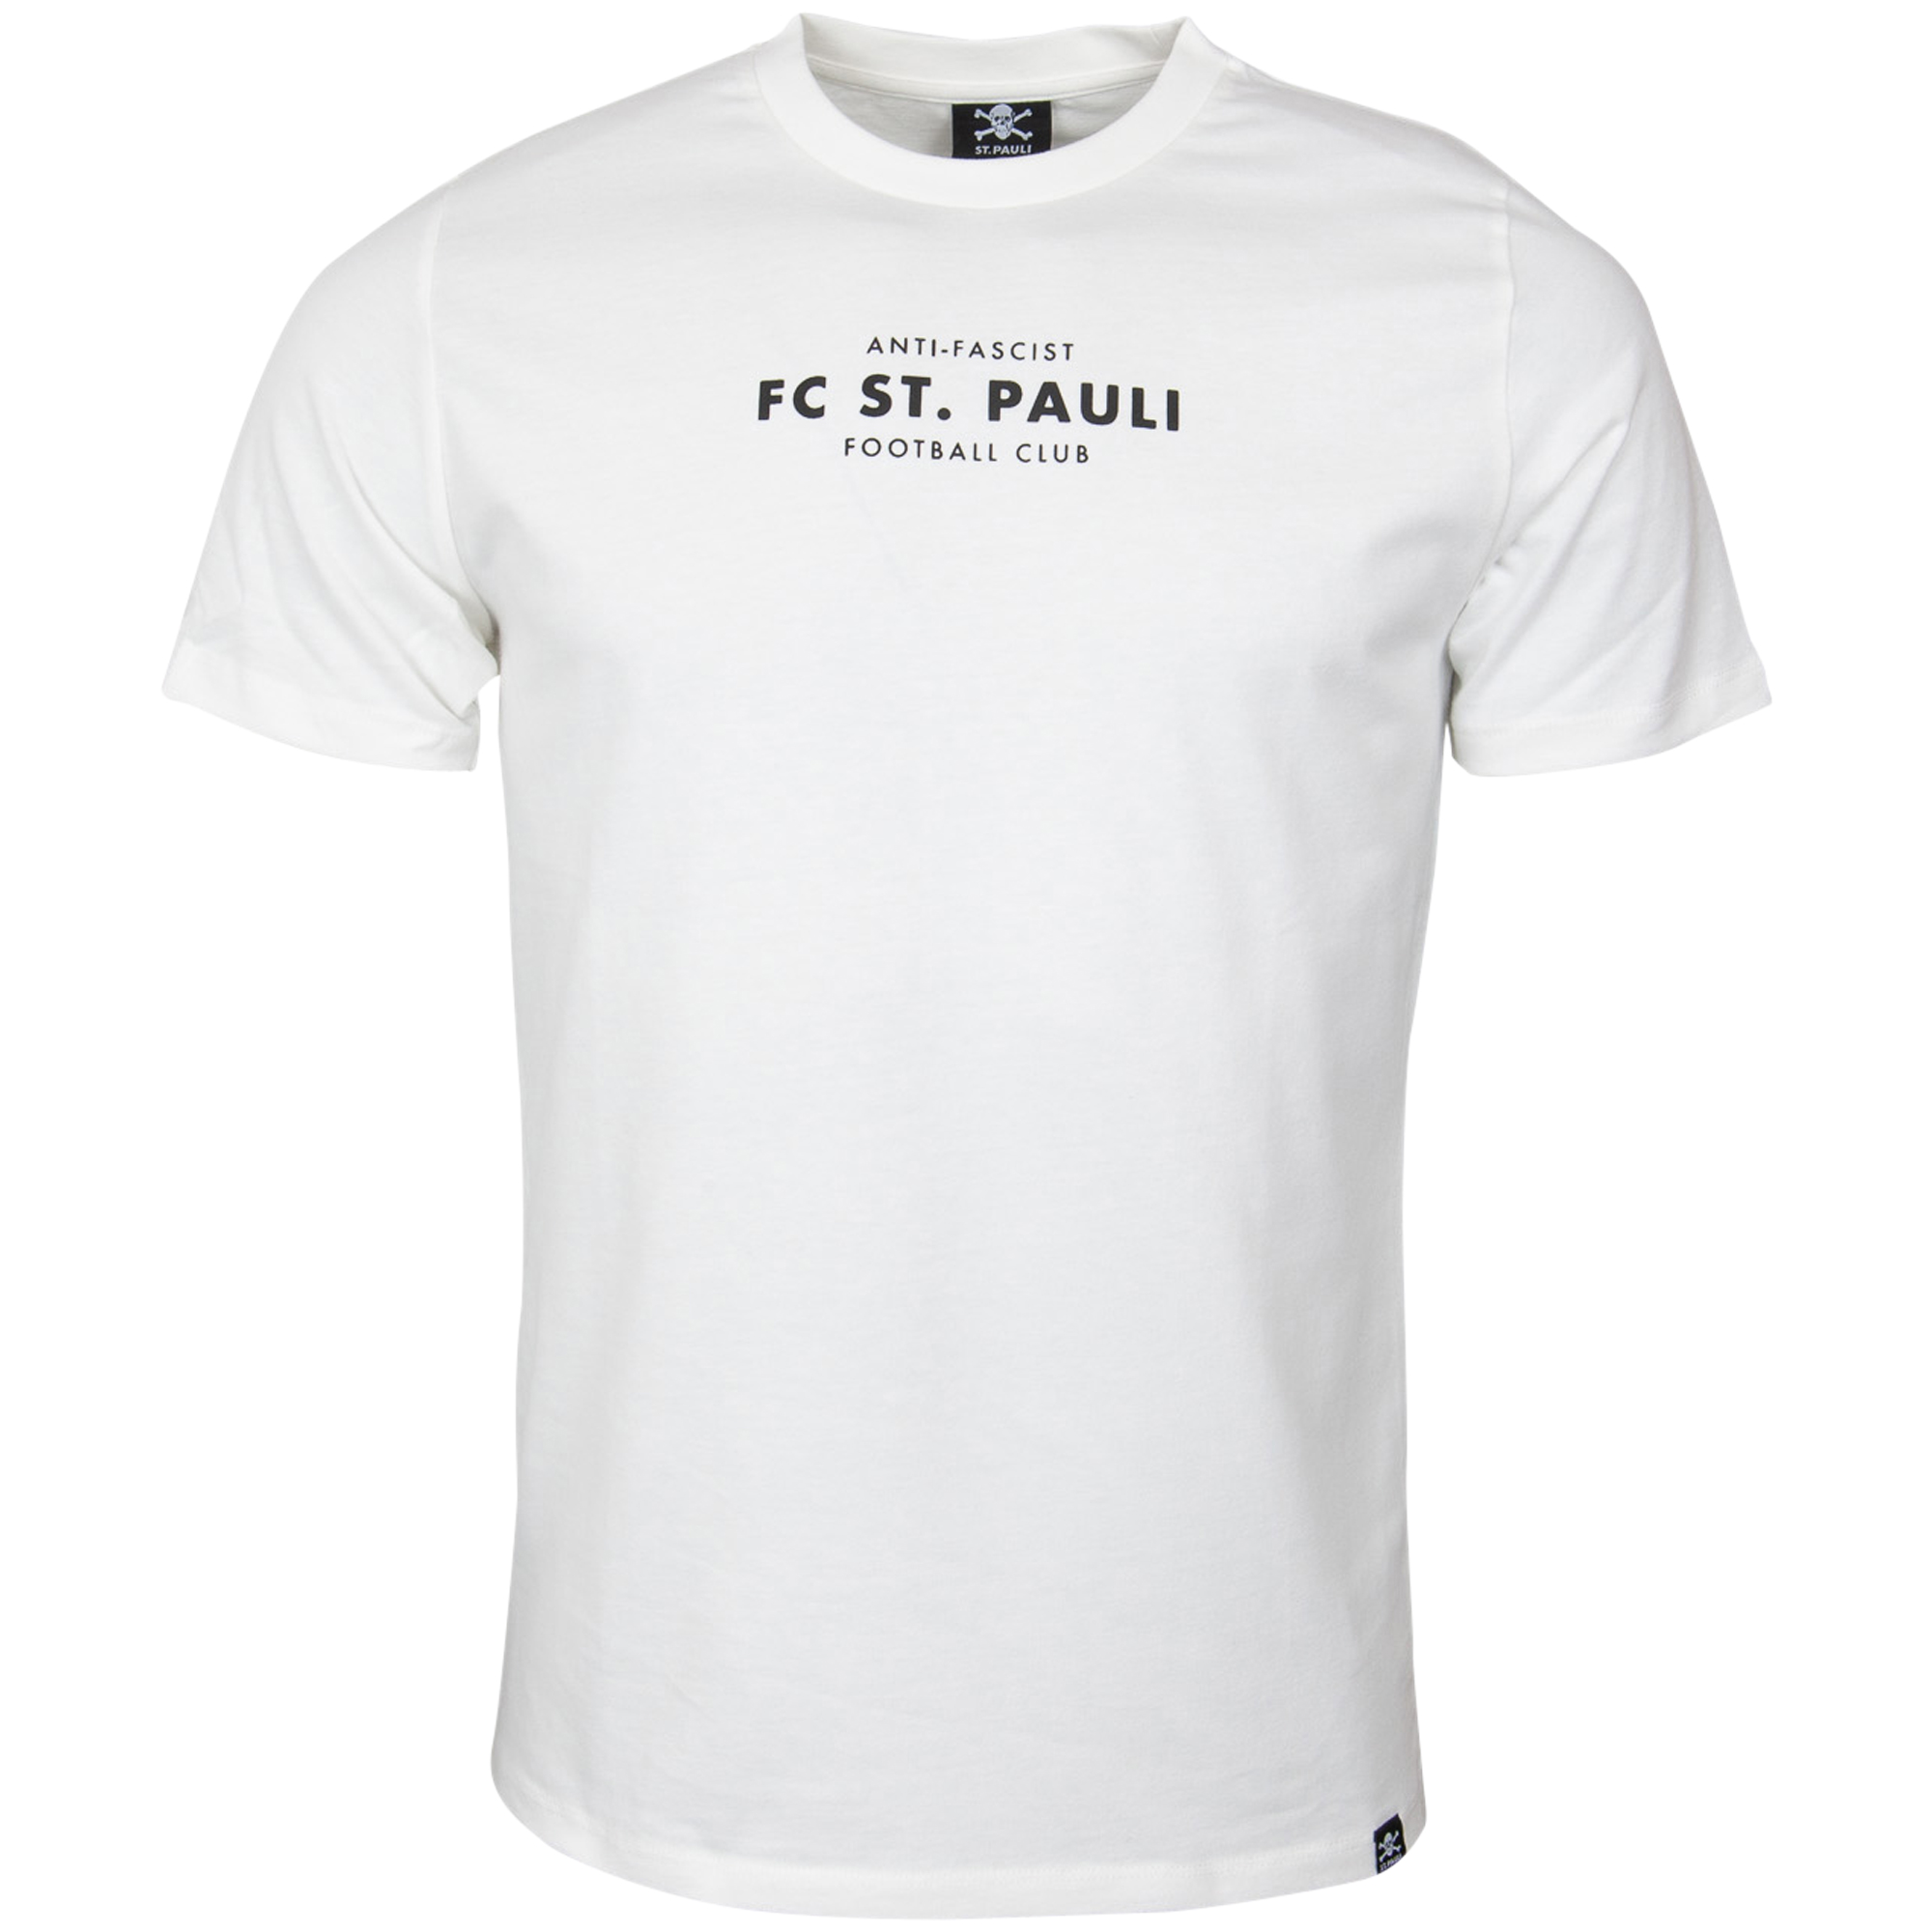 FC St. Pauli - T-Shirt Anti-Fascist Totenkopf - weiß